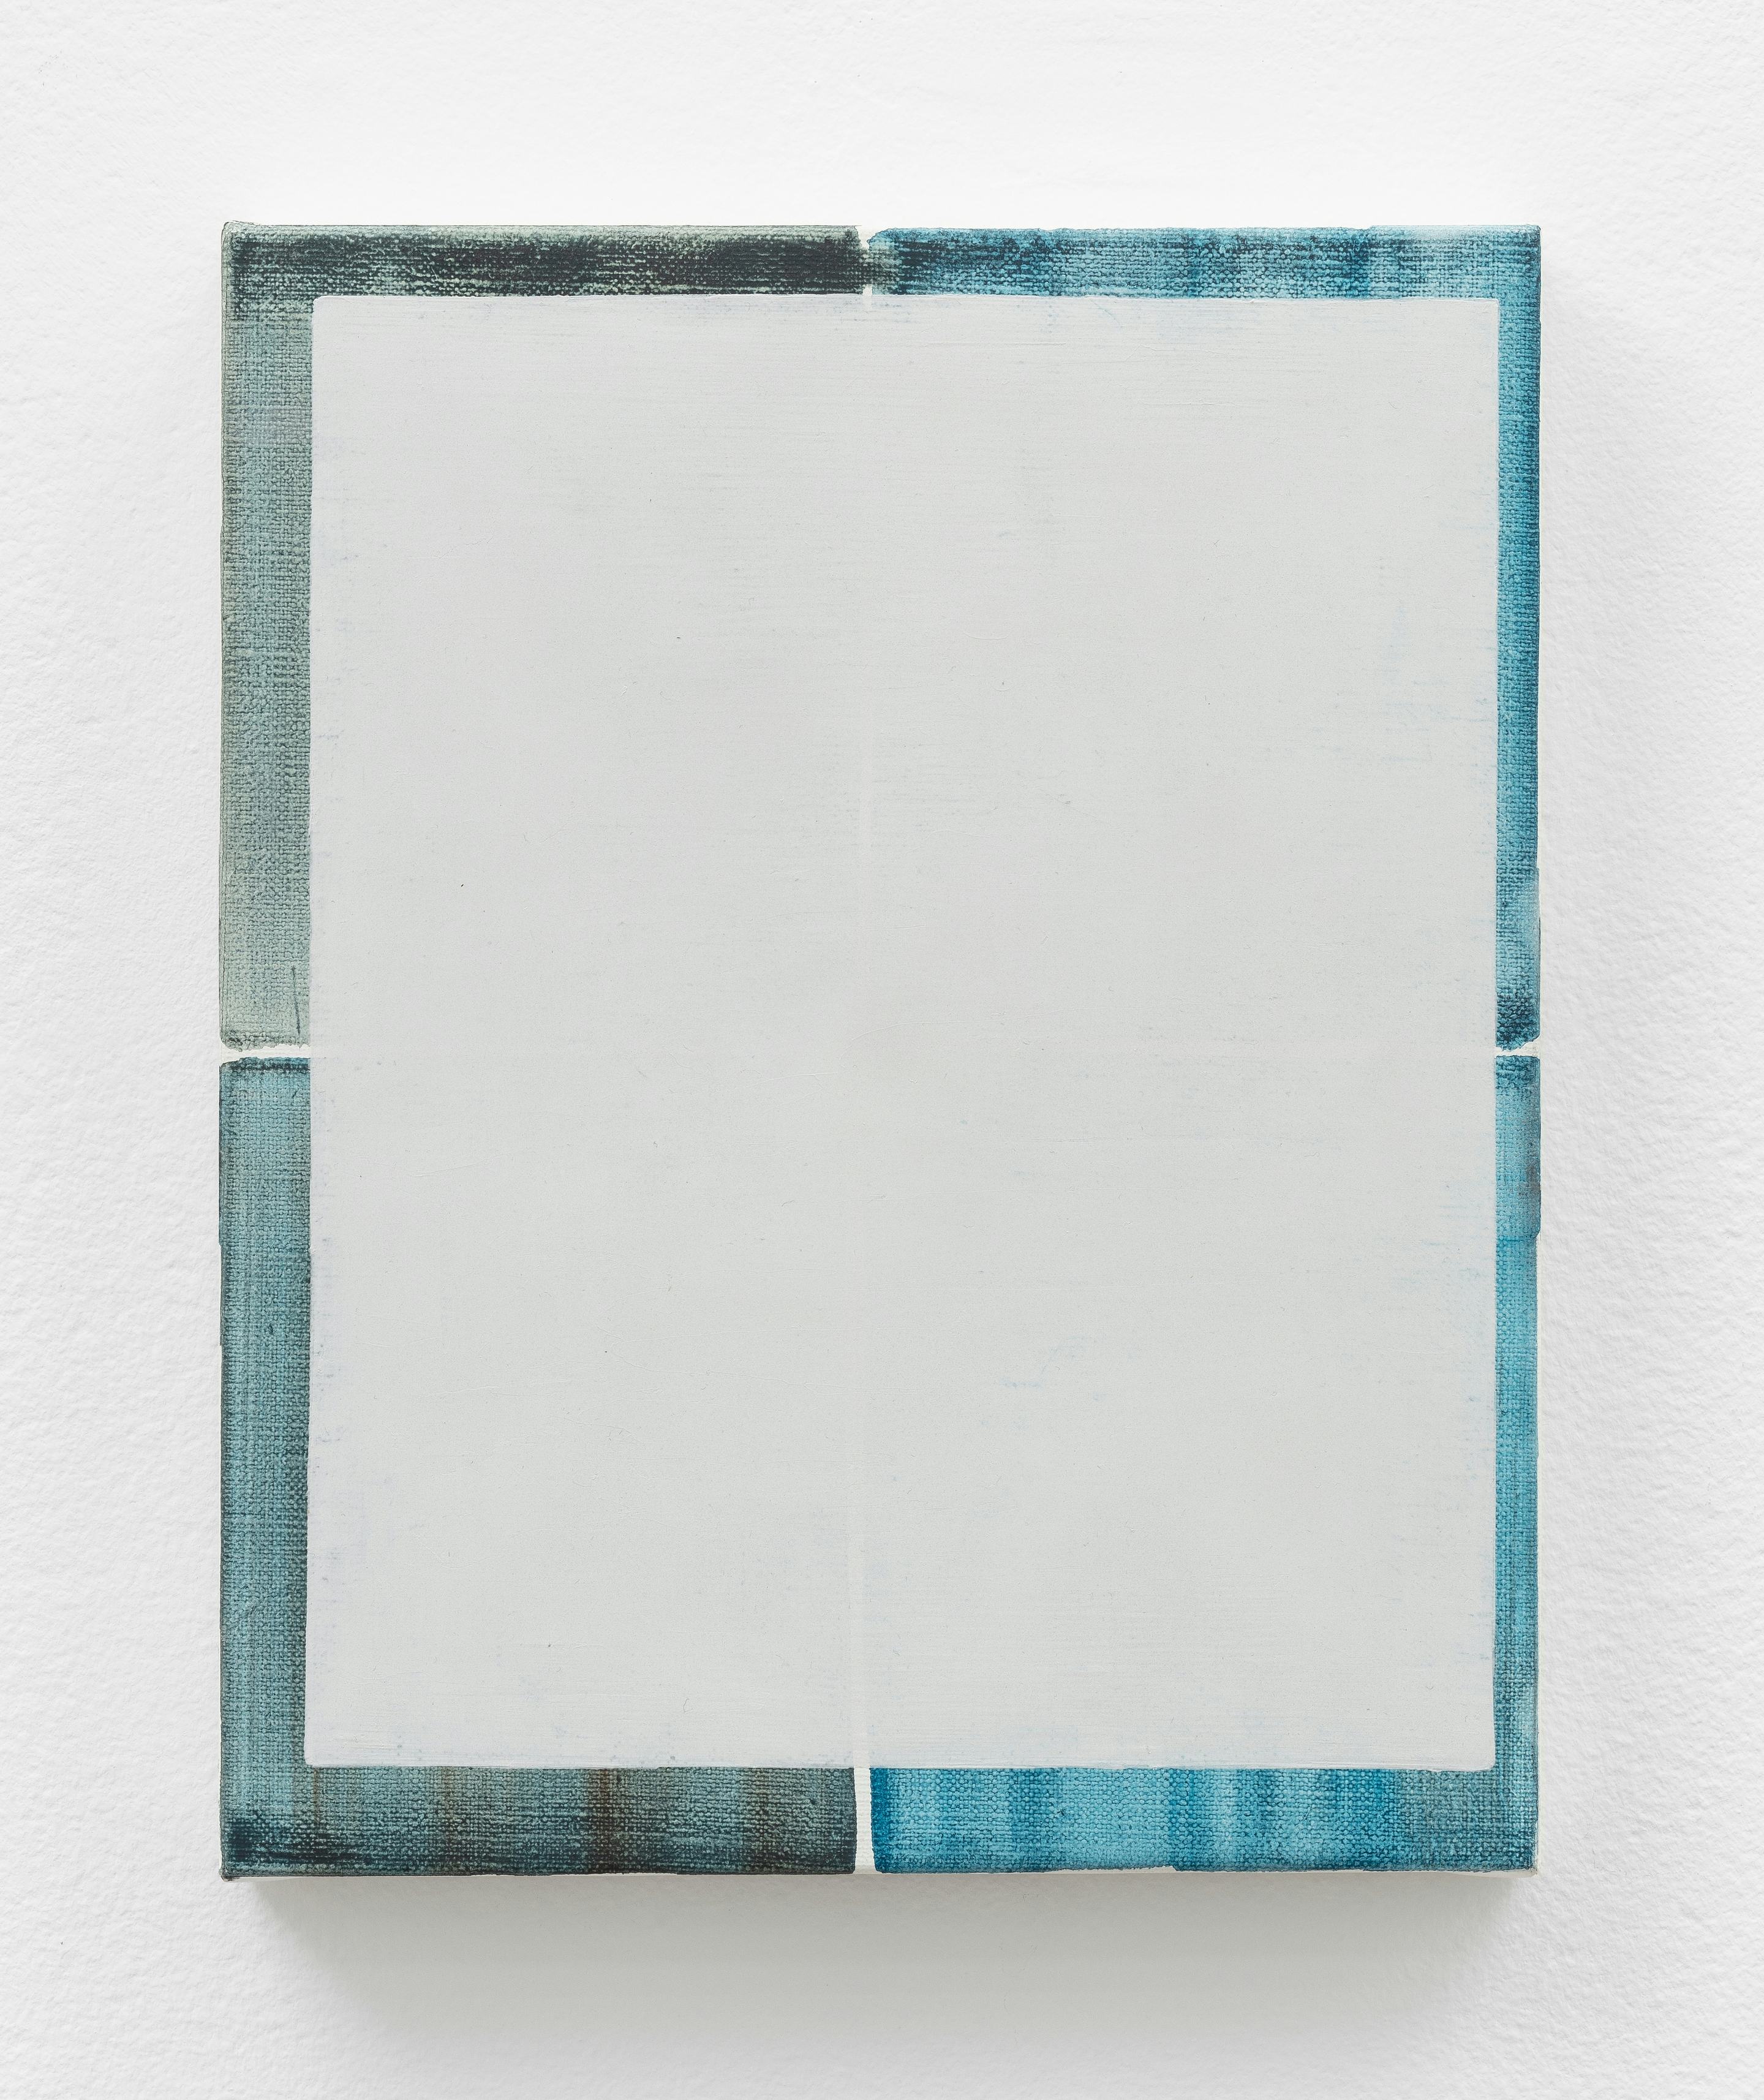 a land (2020)
Oil on canvas. 10h x 8w inches (25.5h x 20.2w cm)